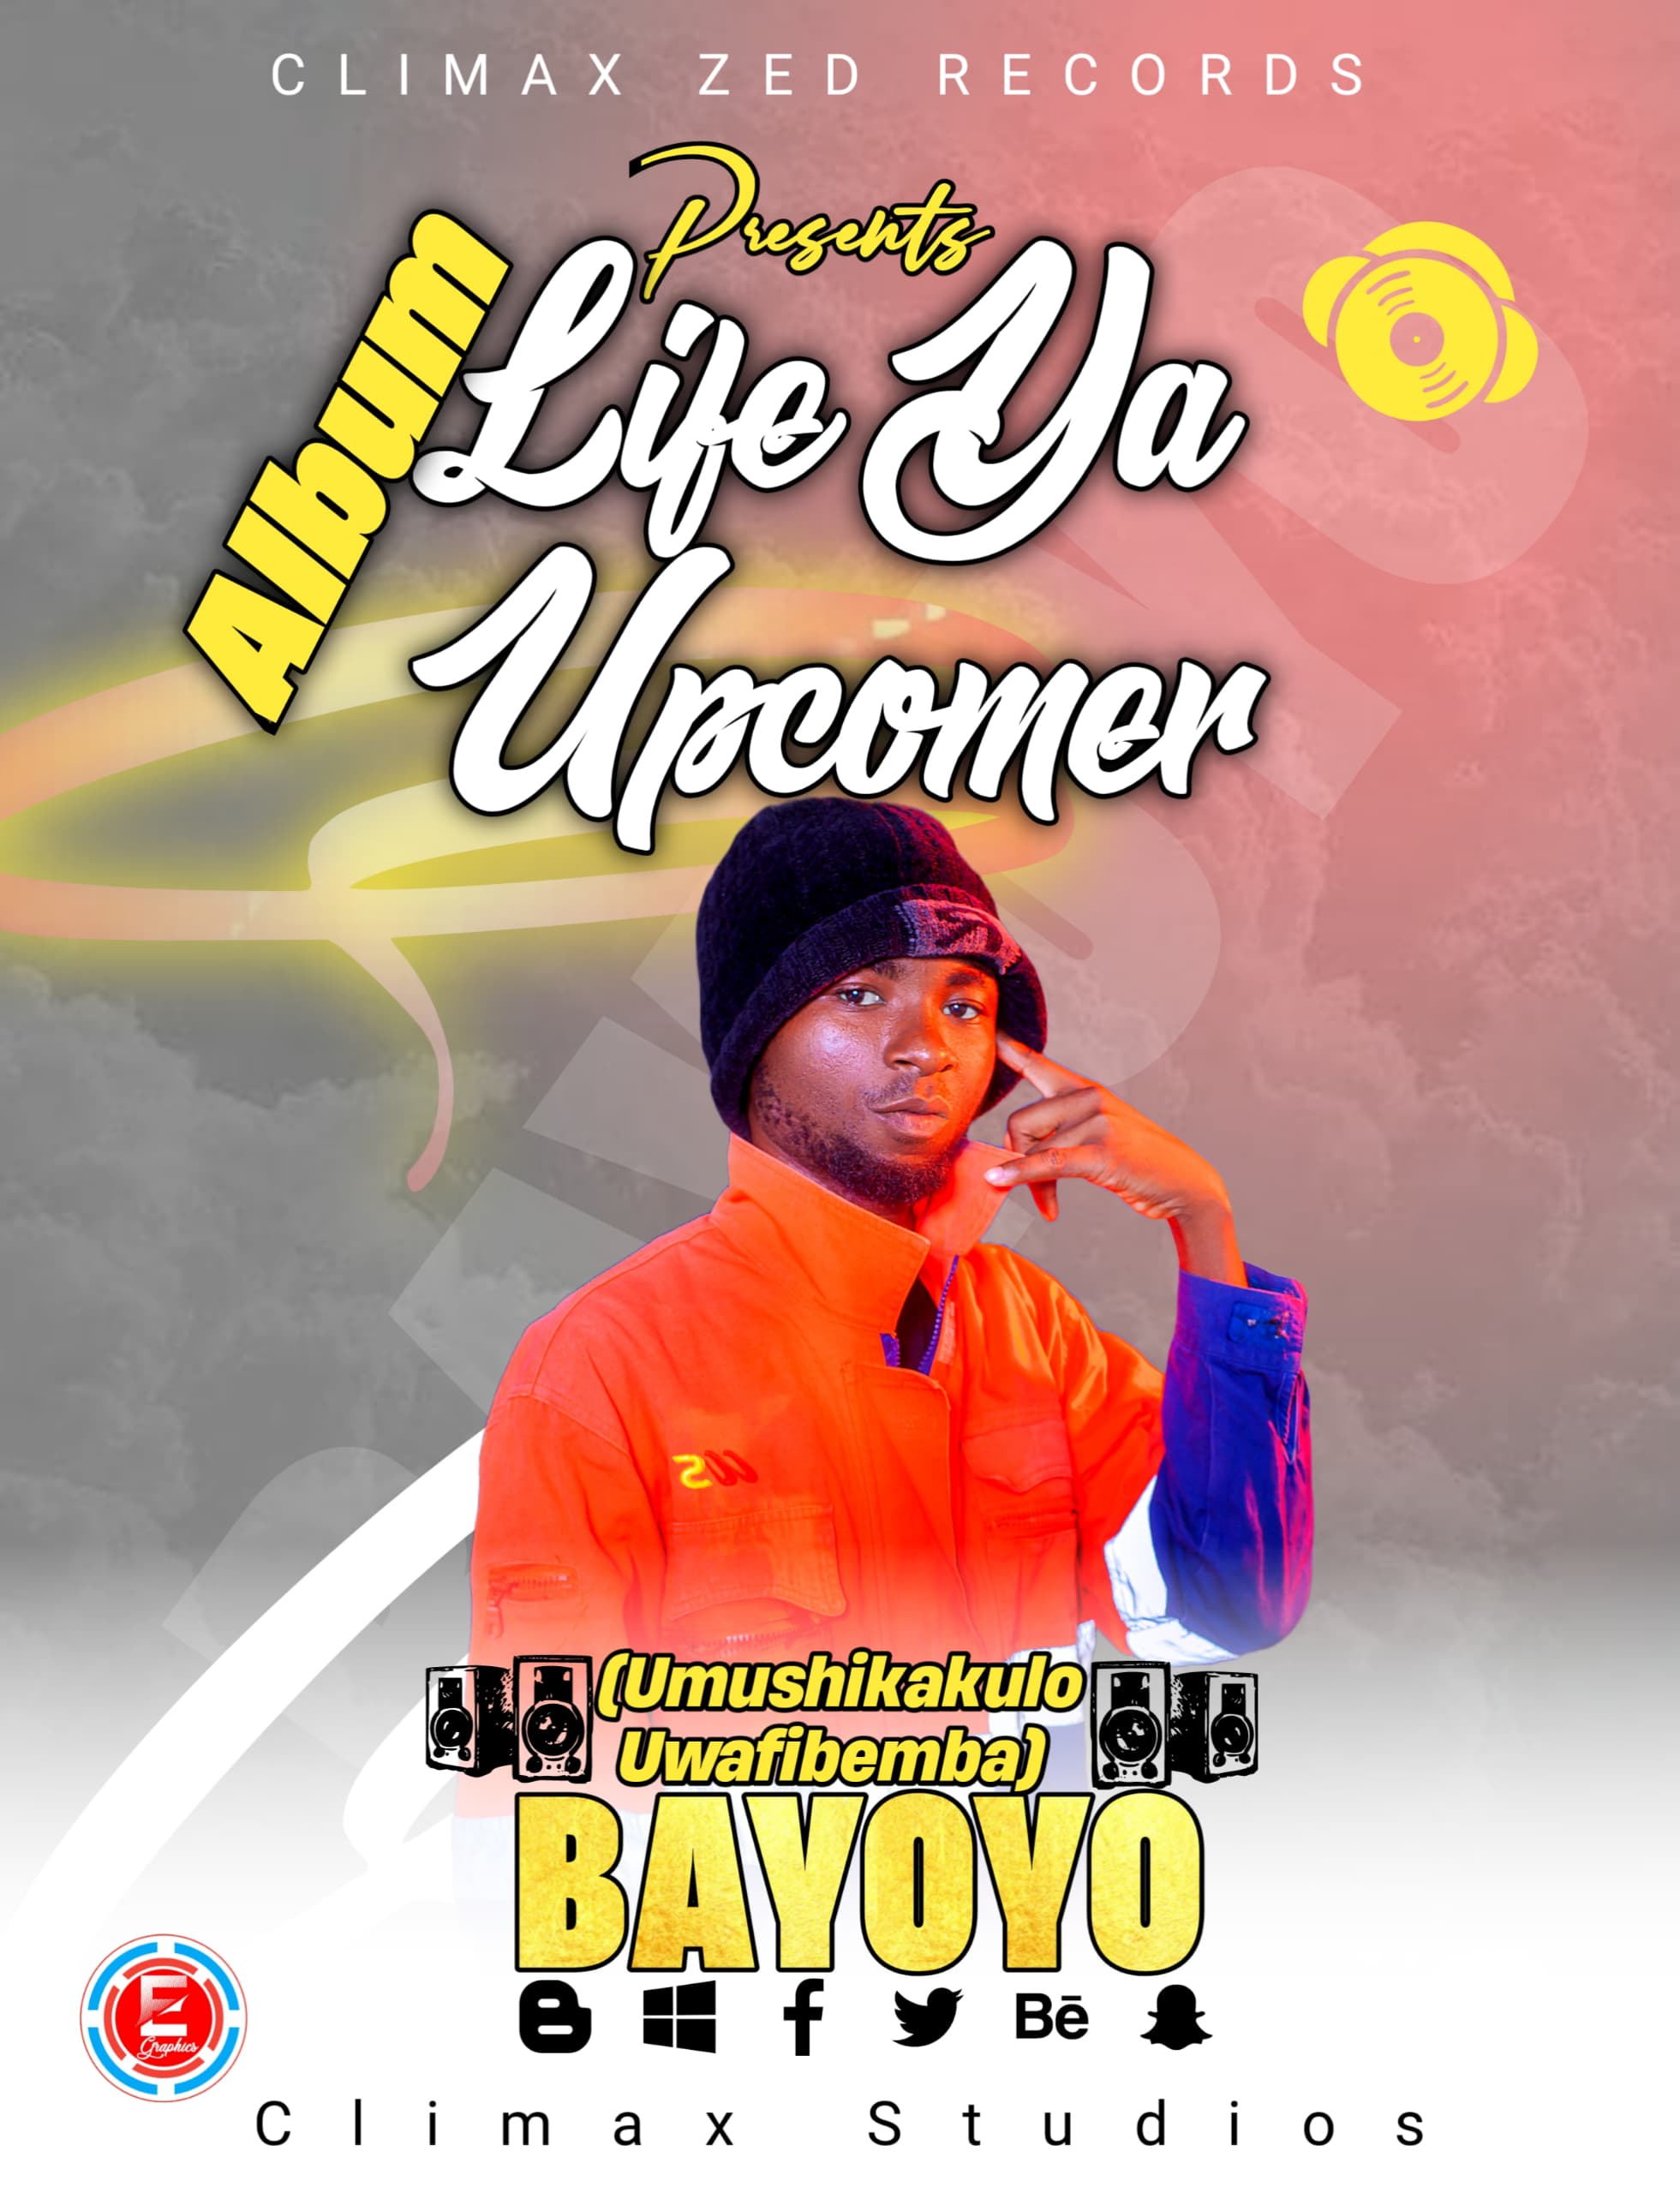 Umushikakulo Uwafibemba “Bayoyo” – Life Ya Upcomer (Album)